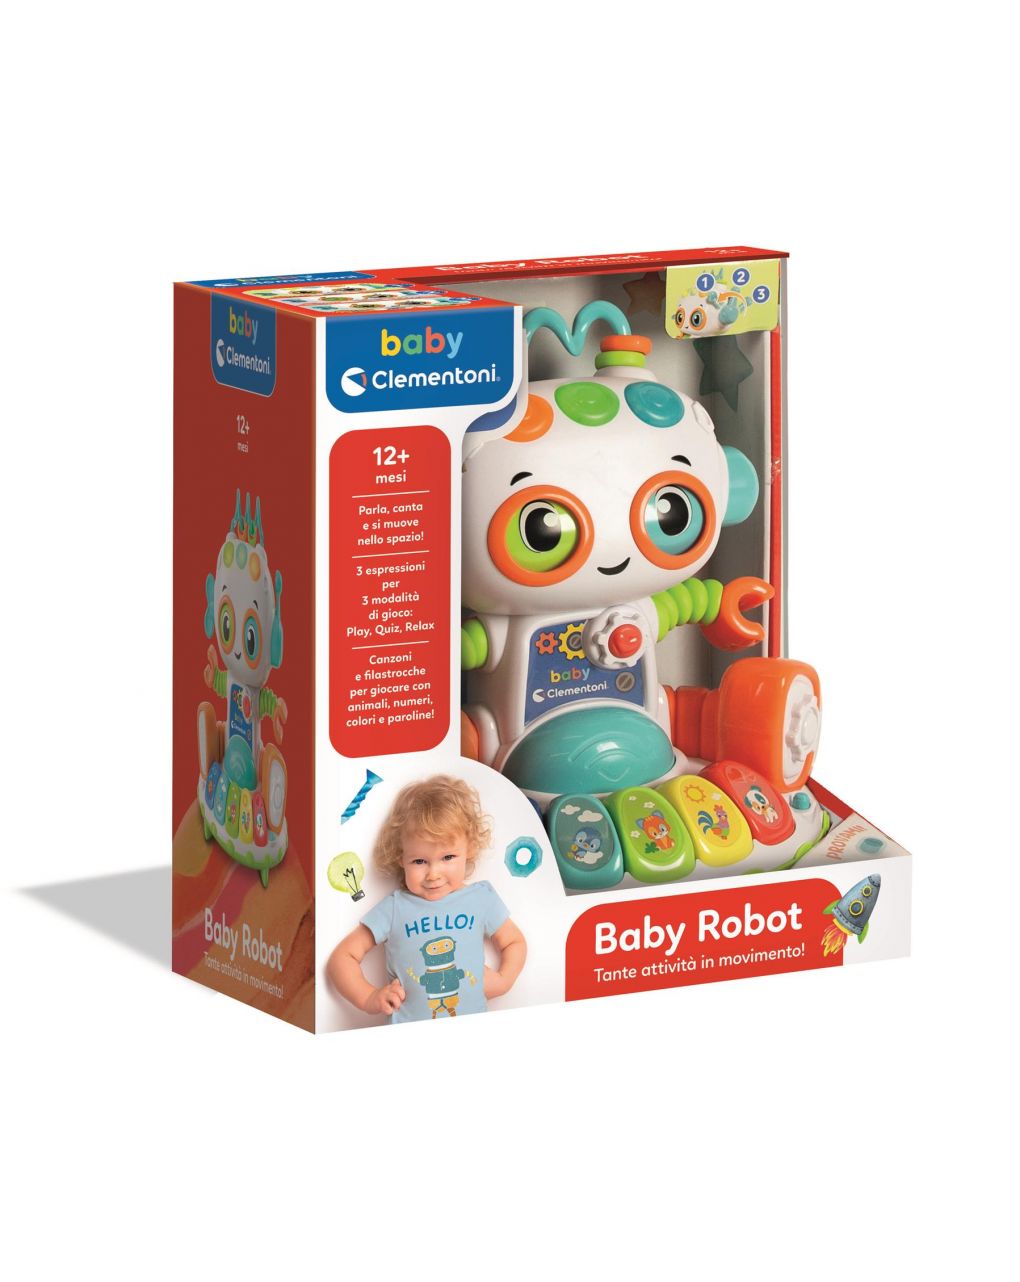 Baby clementoni - my baby robot - Clementoni